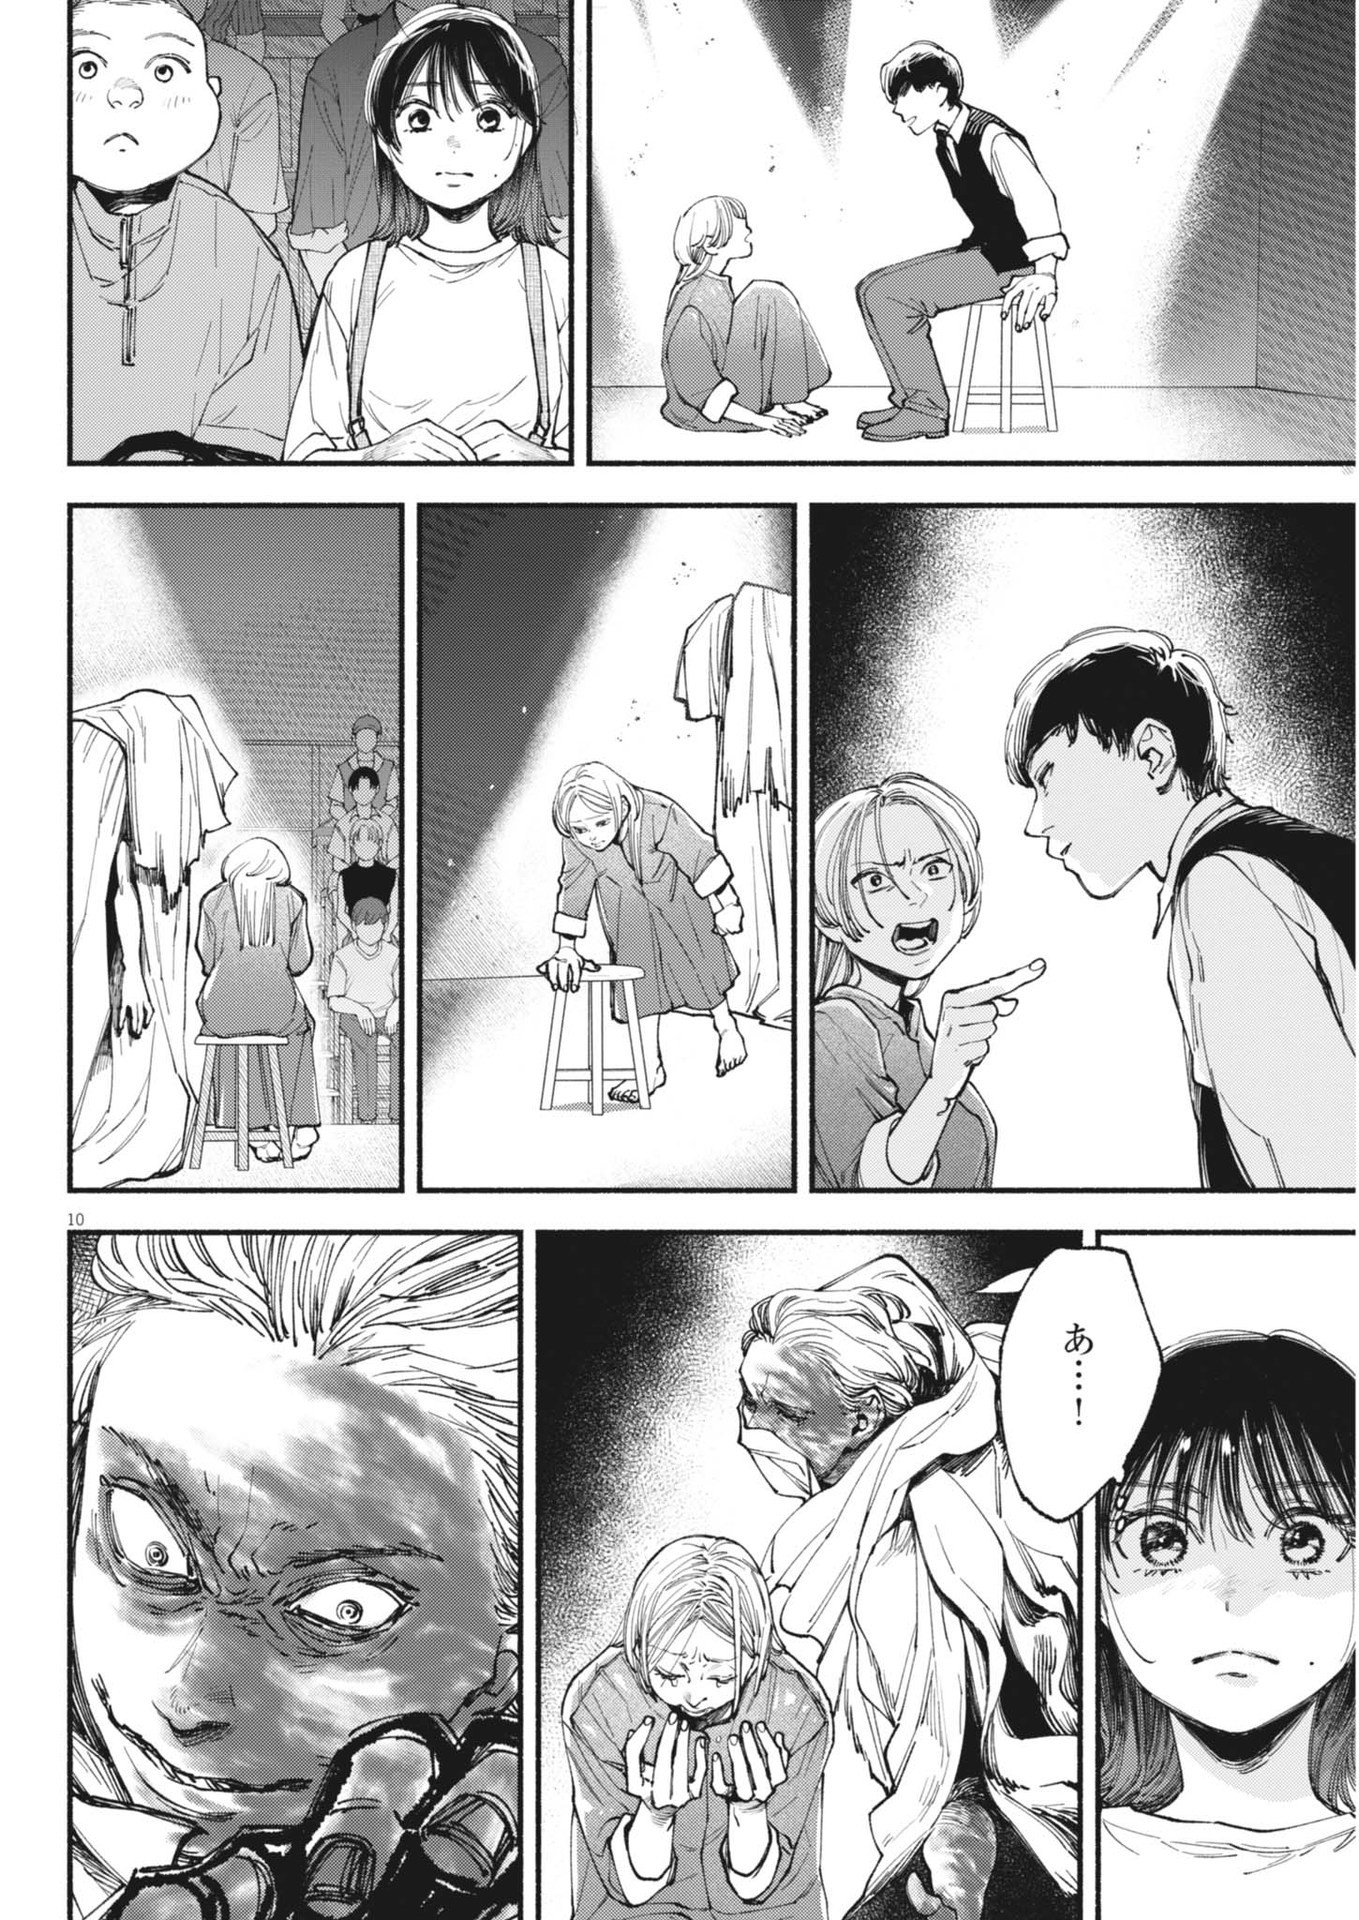 Konoyo wa Tatakau Kachi ga Aru  - Chapter 27 - Page 10